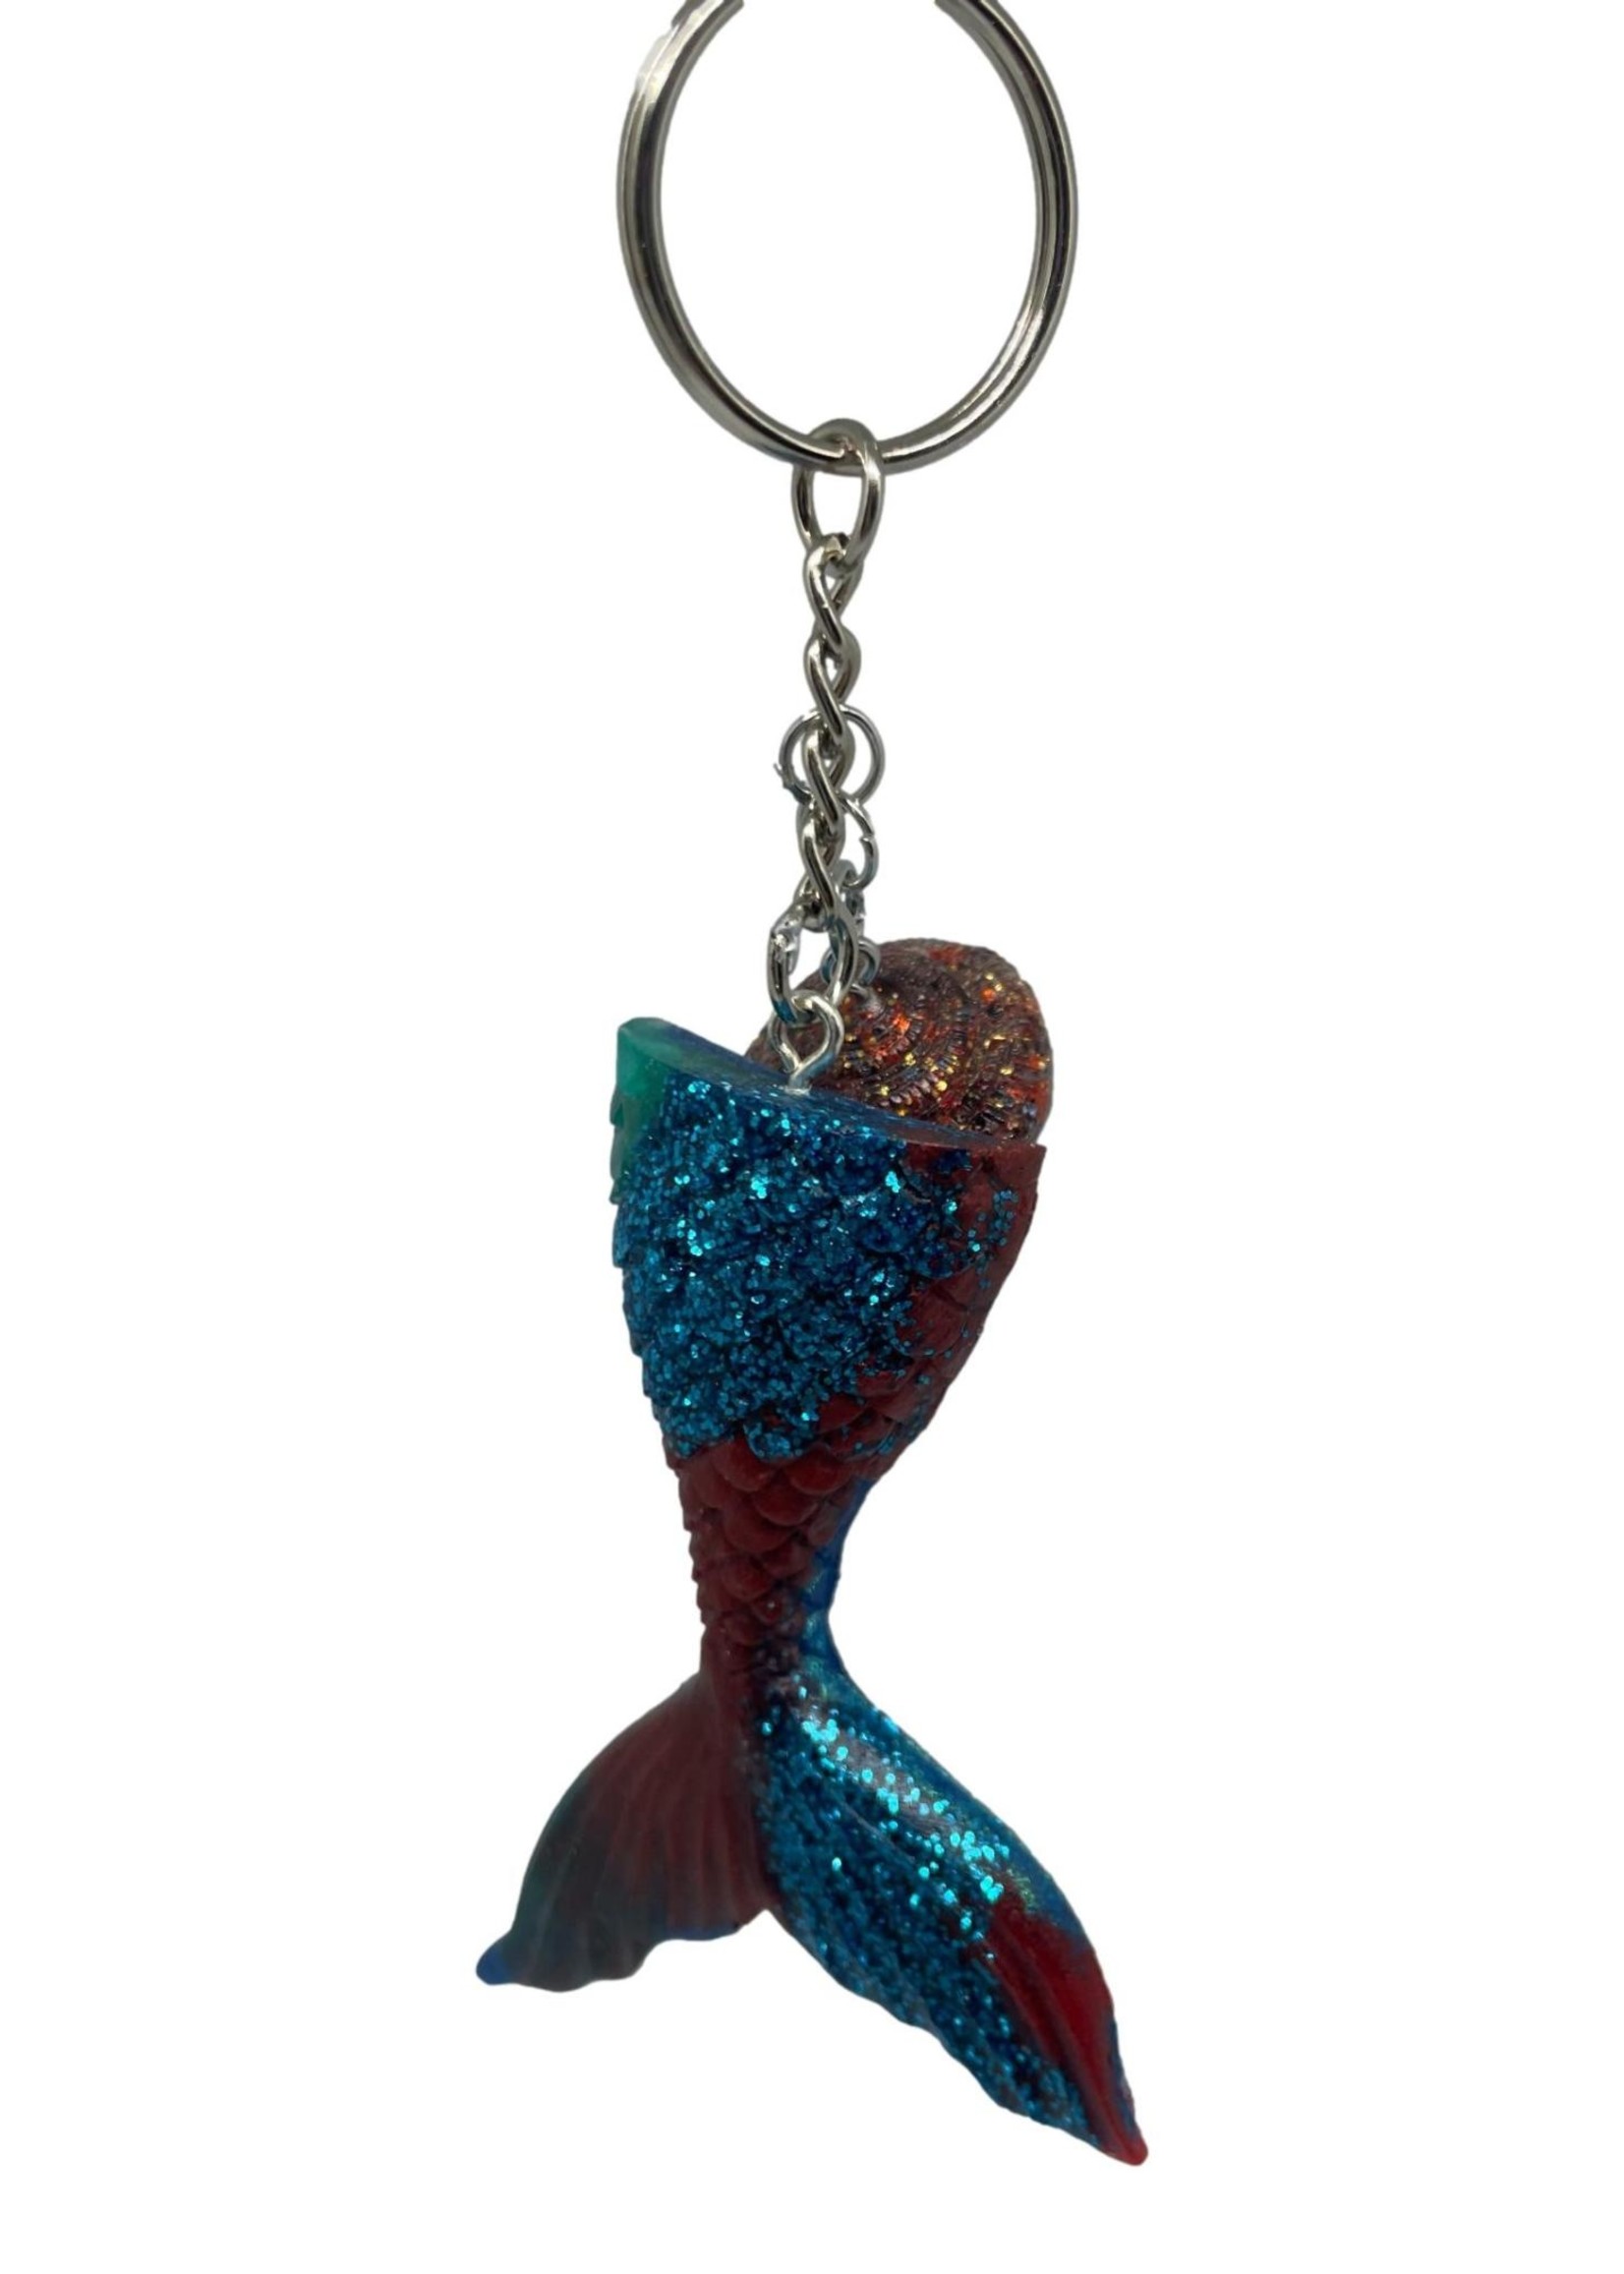 East Coast Sirens Teal & Wine Mermaid Tail Keychain - Small